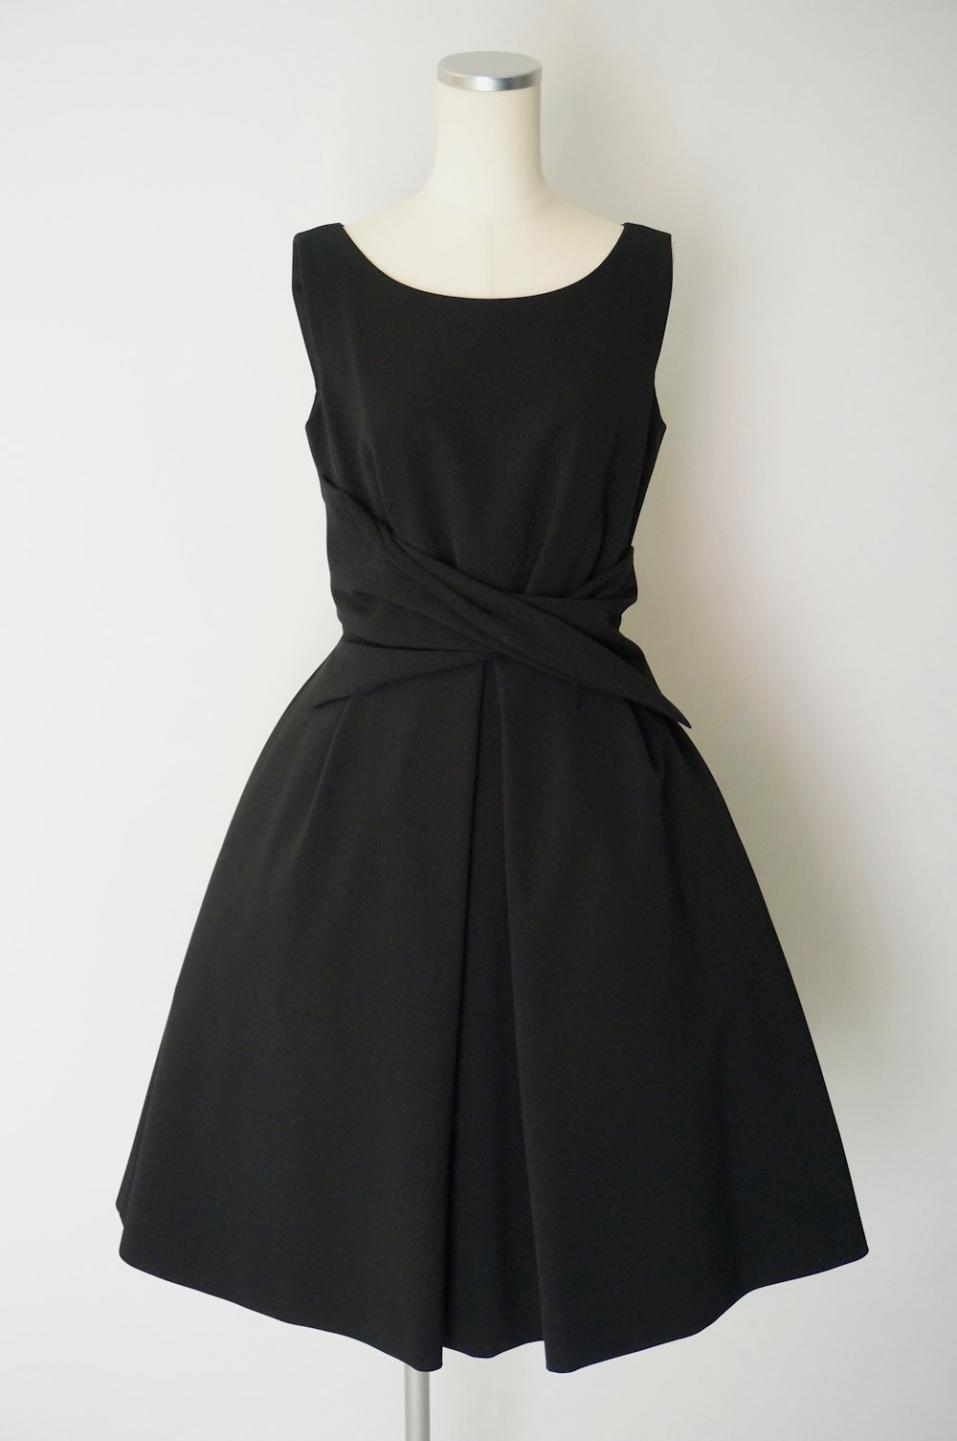 フォクシー ウエストクロスドレープドレス 38 / レンタルリトルブラックドレス テン Rental Little Black Dress ten.